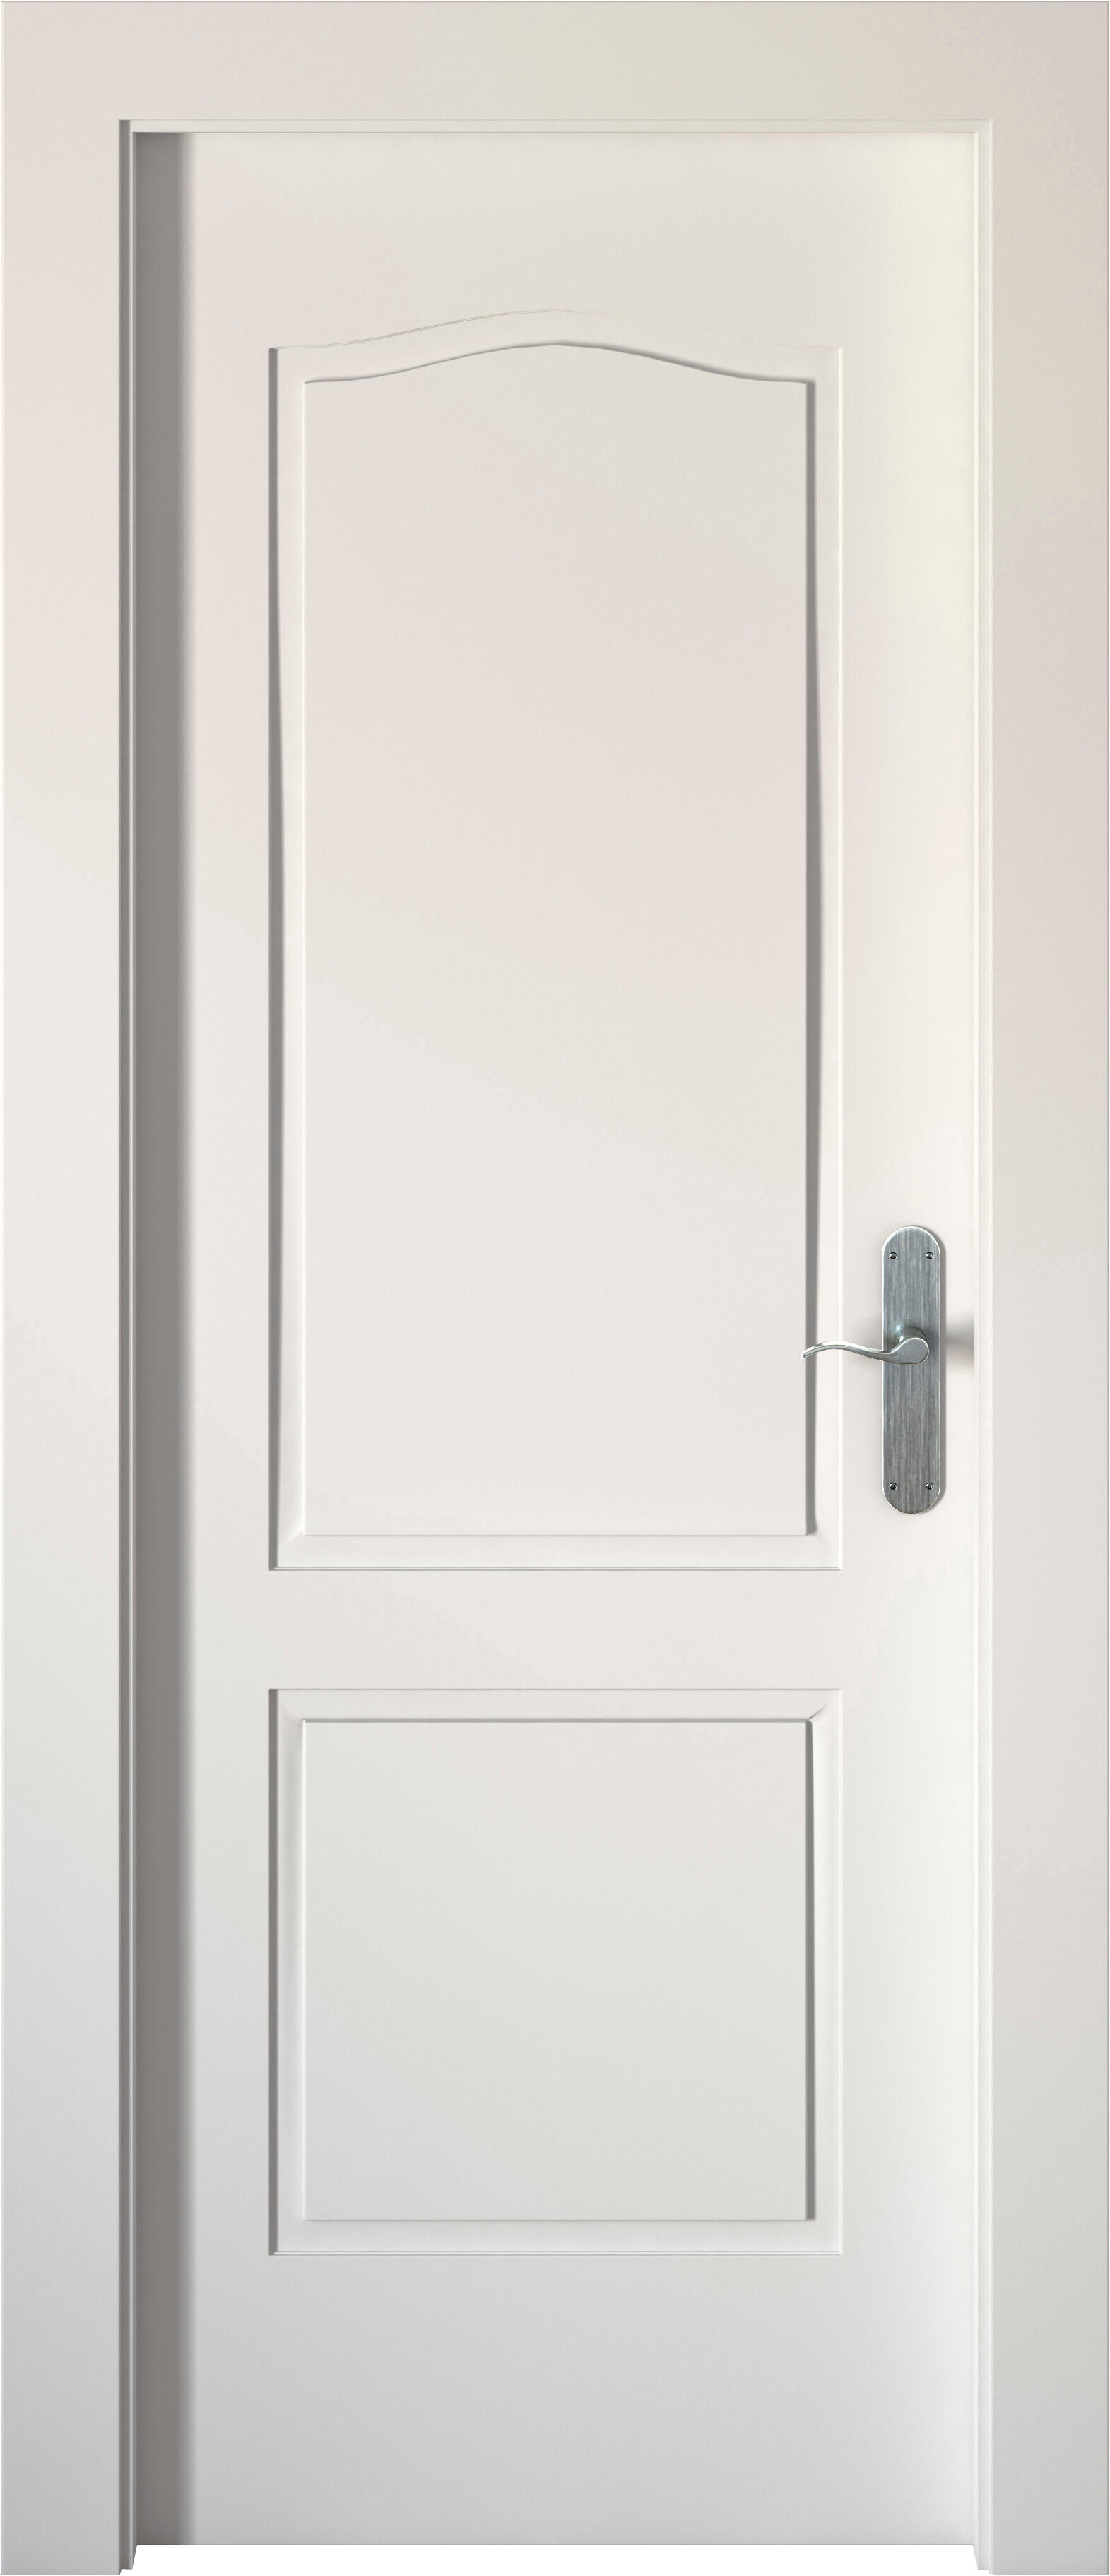 Puerta praga blanco apertura izquierda 62.5cm